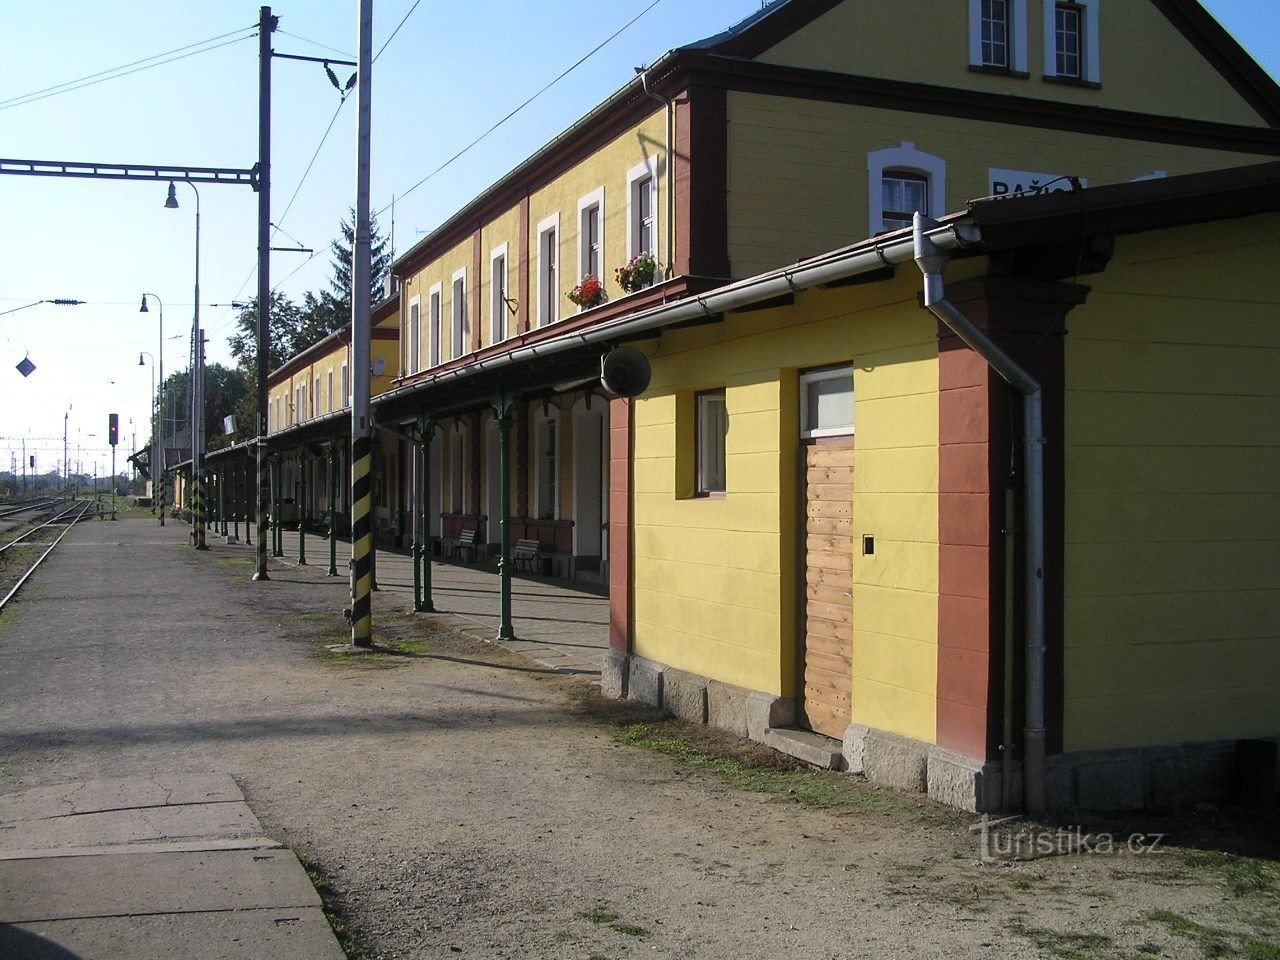 Razice - stacja kolejowa